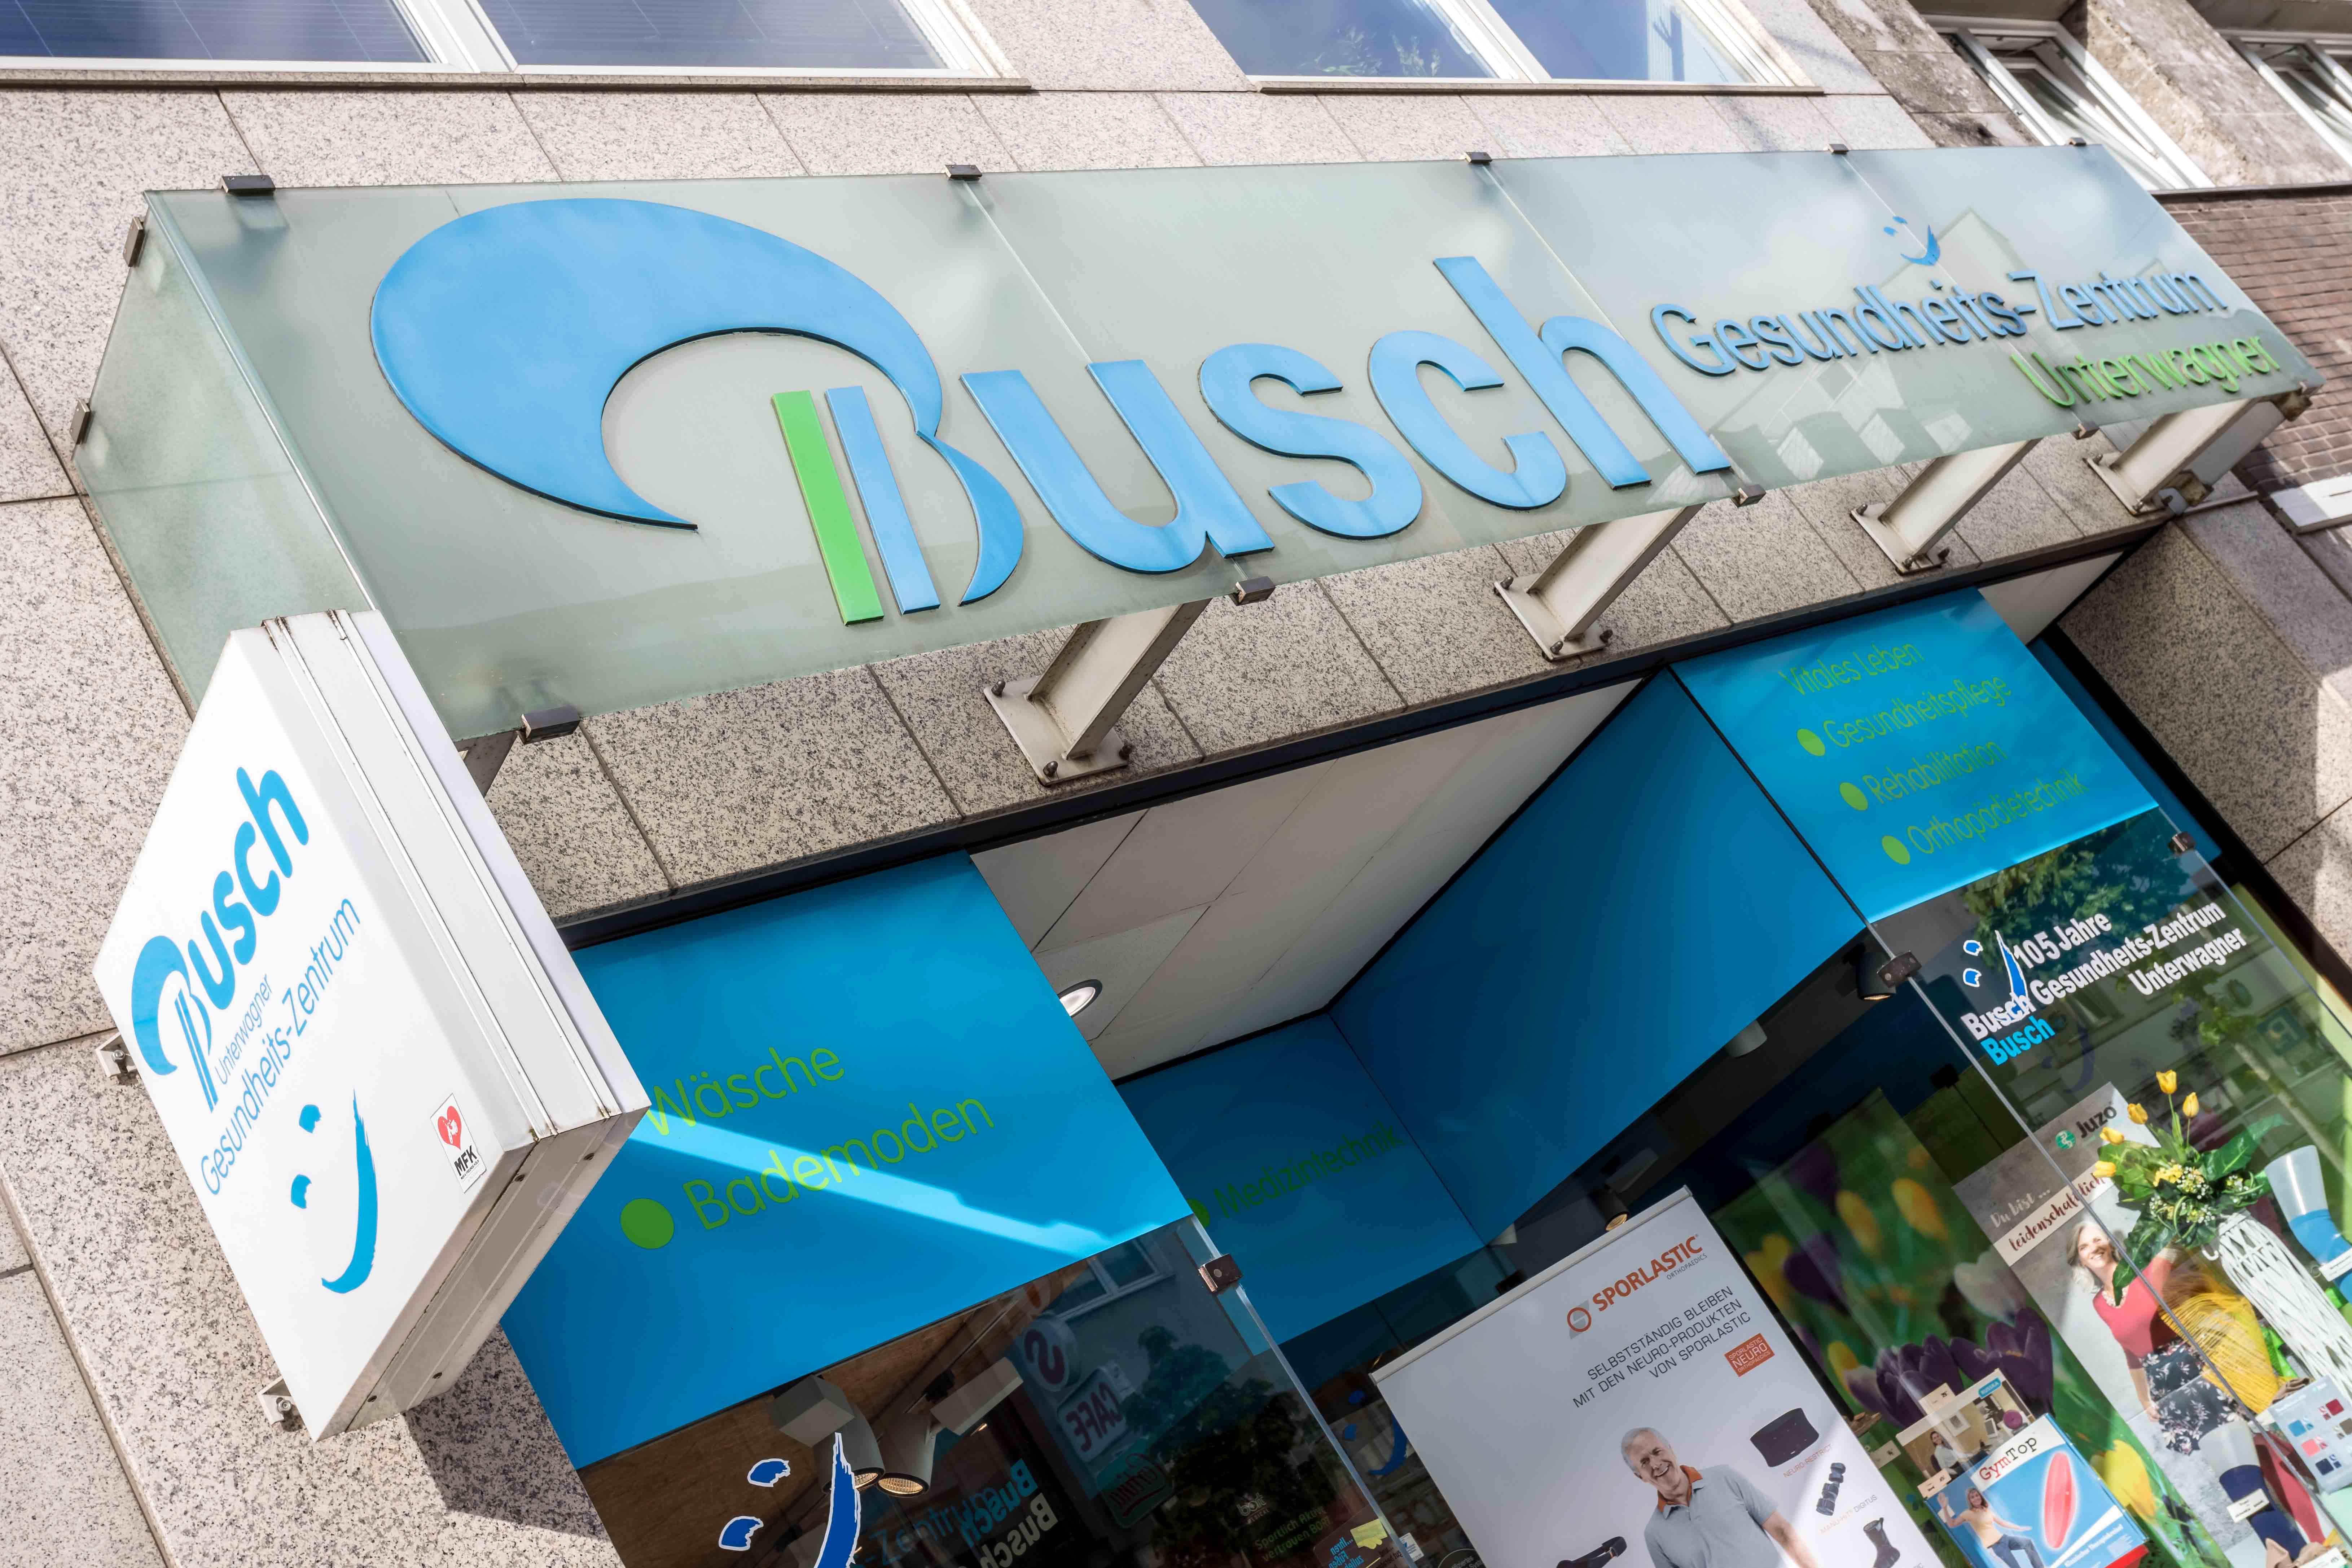 Busch Gesundheits-Zentrum Unterwagner GmbH & Co. KG Köln, Frankfurter Straße 32 in Köln